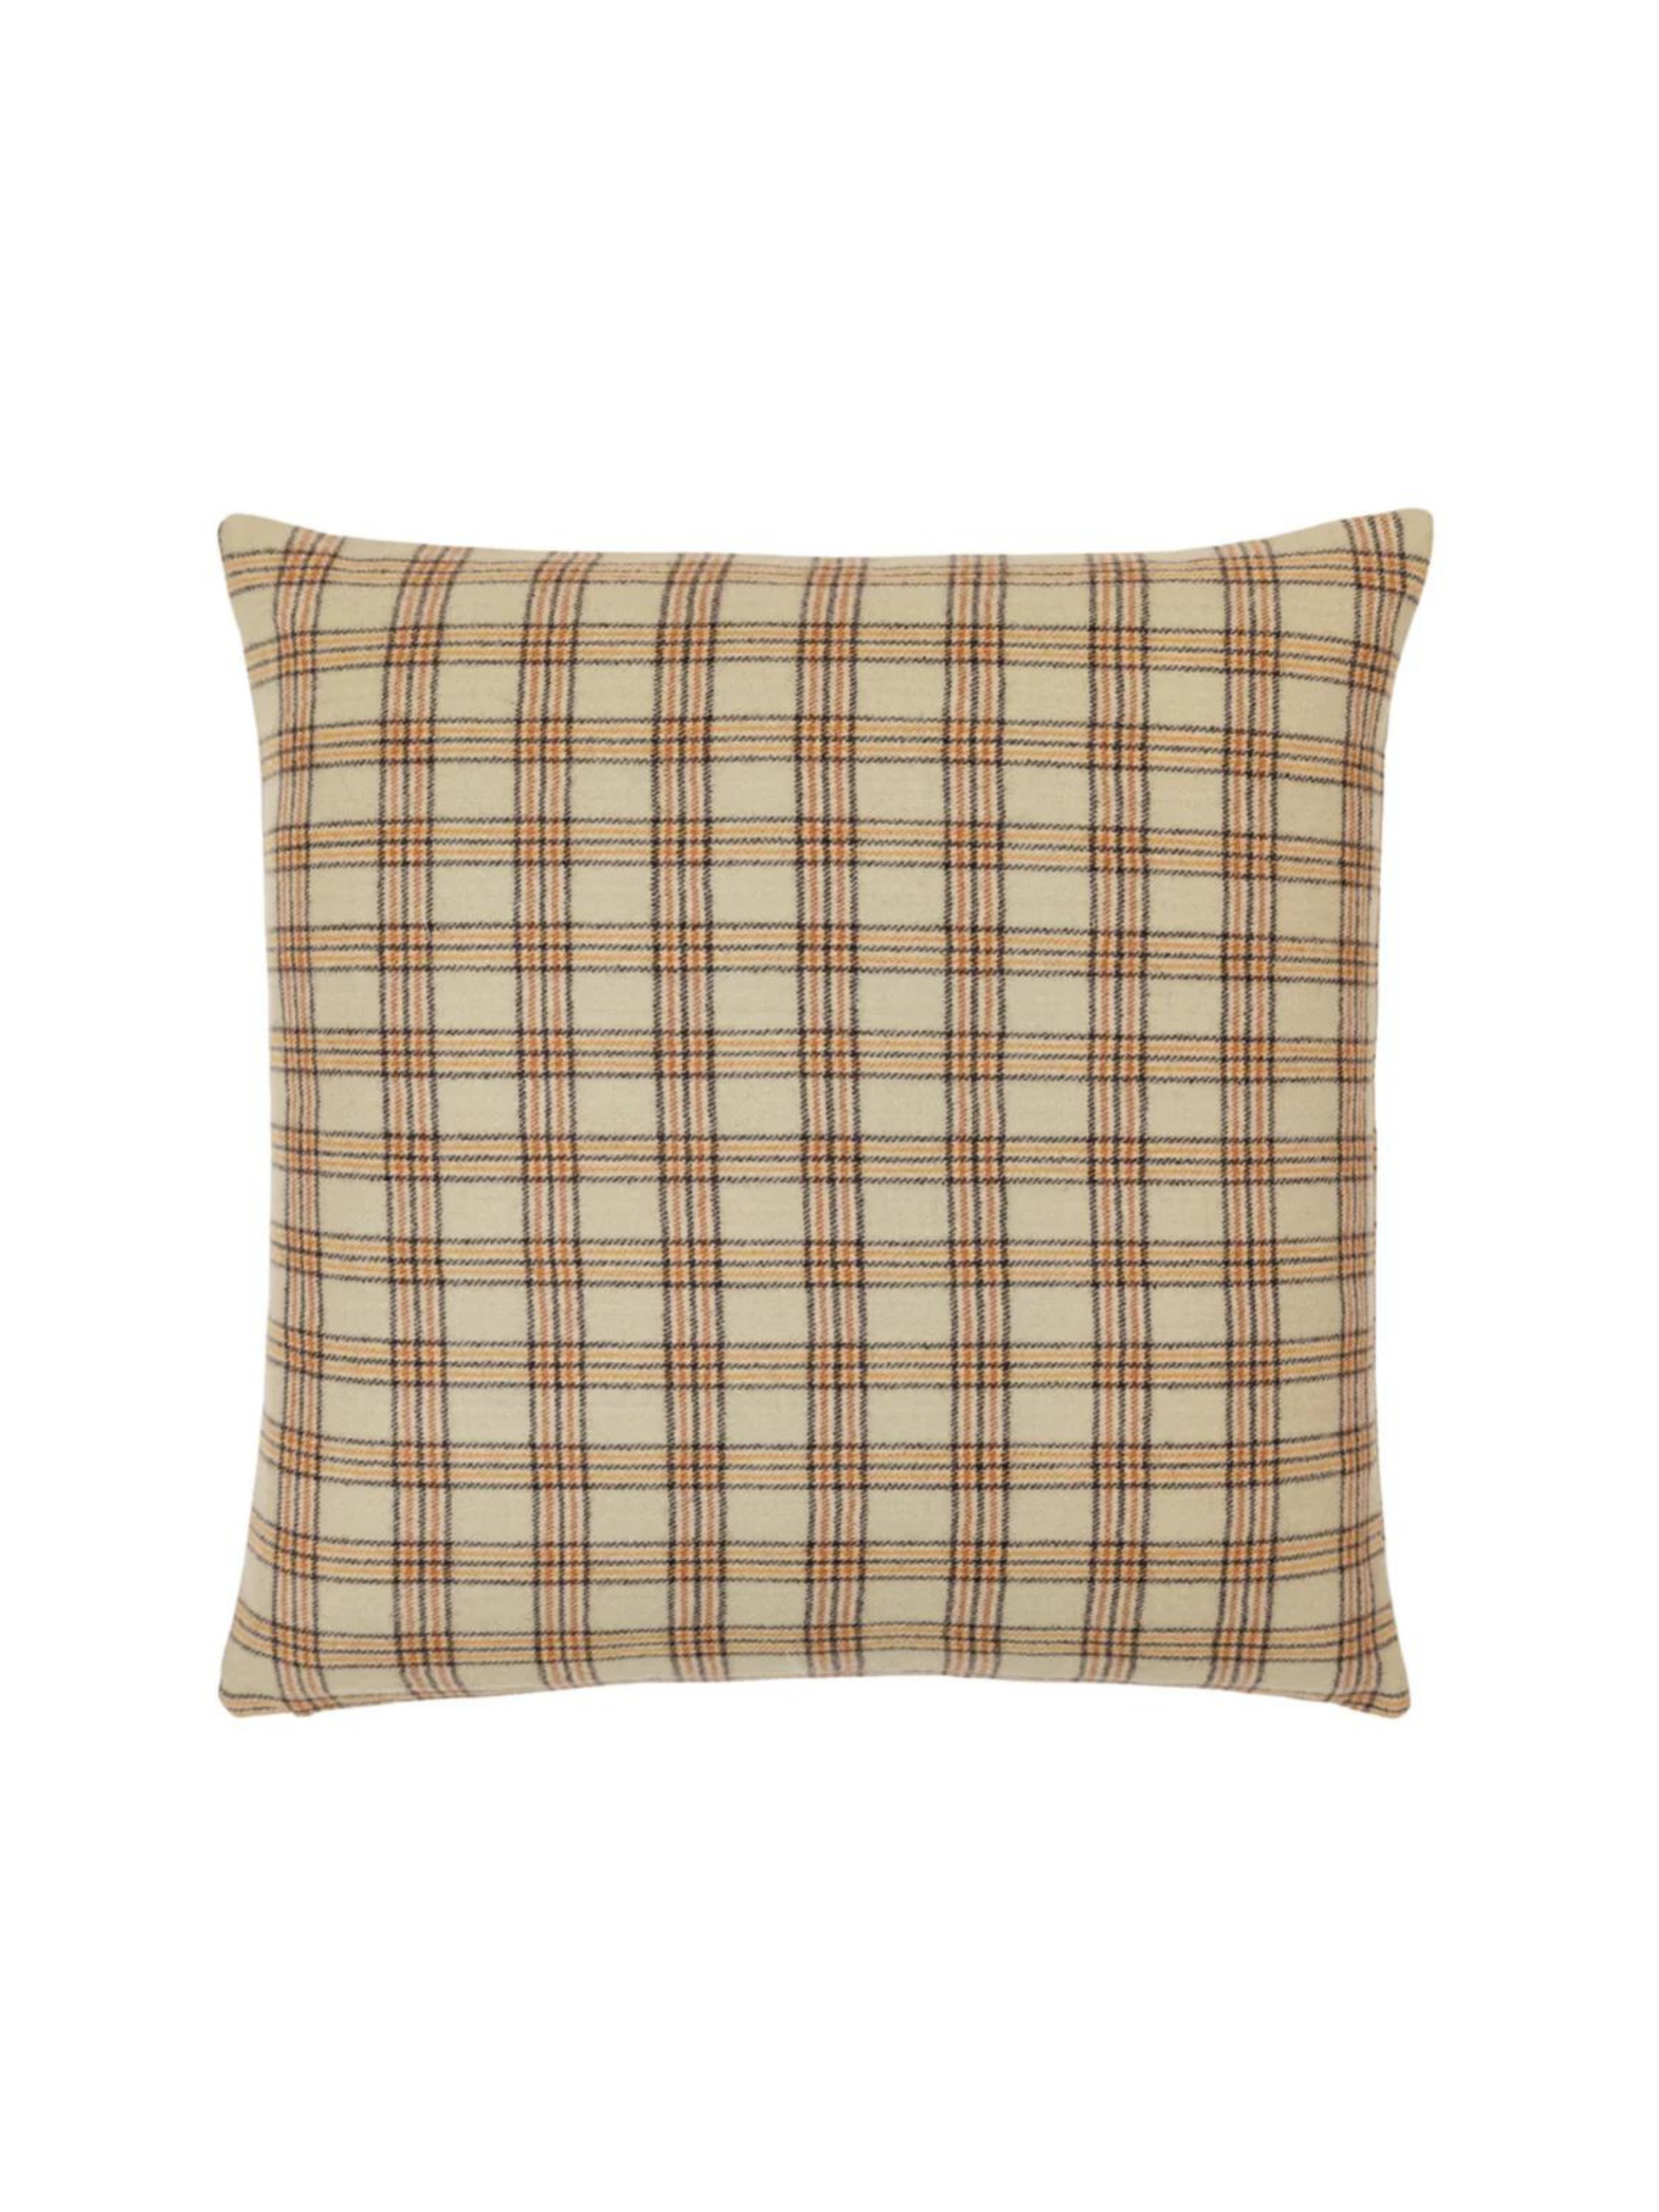 Highlands Mint Plaid Wool Pillow